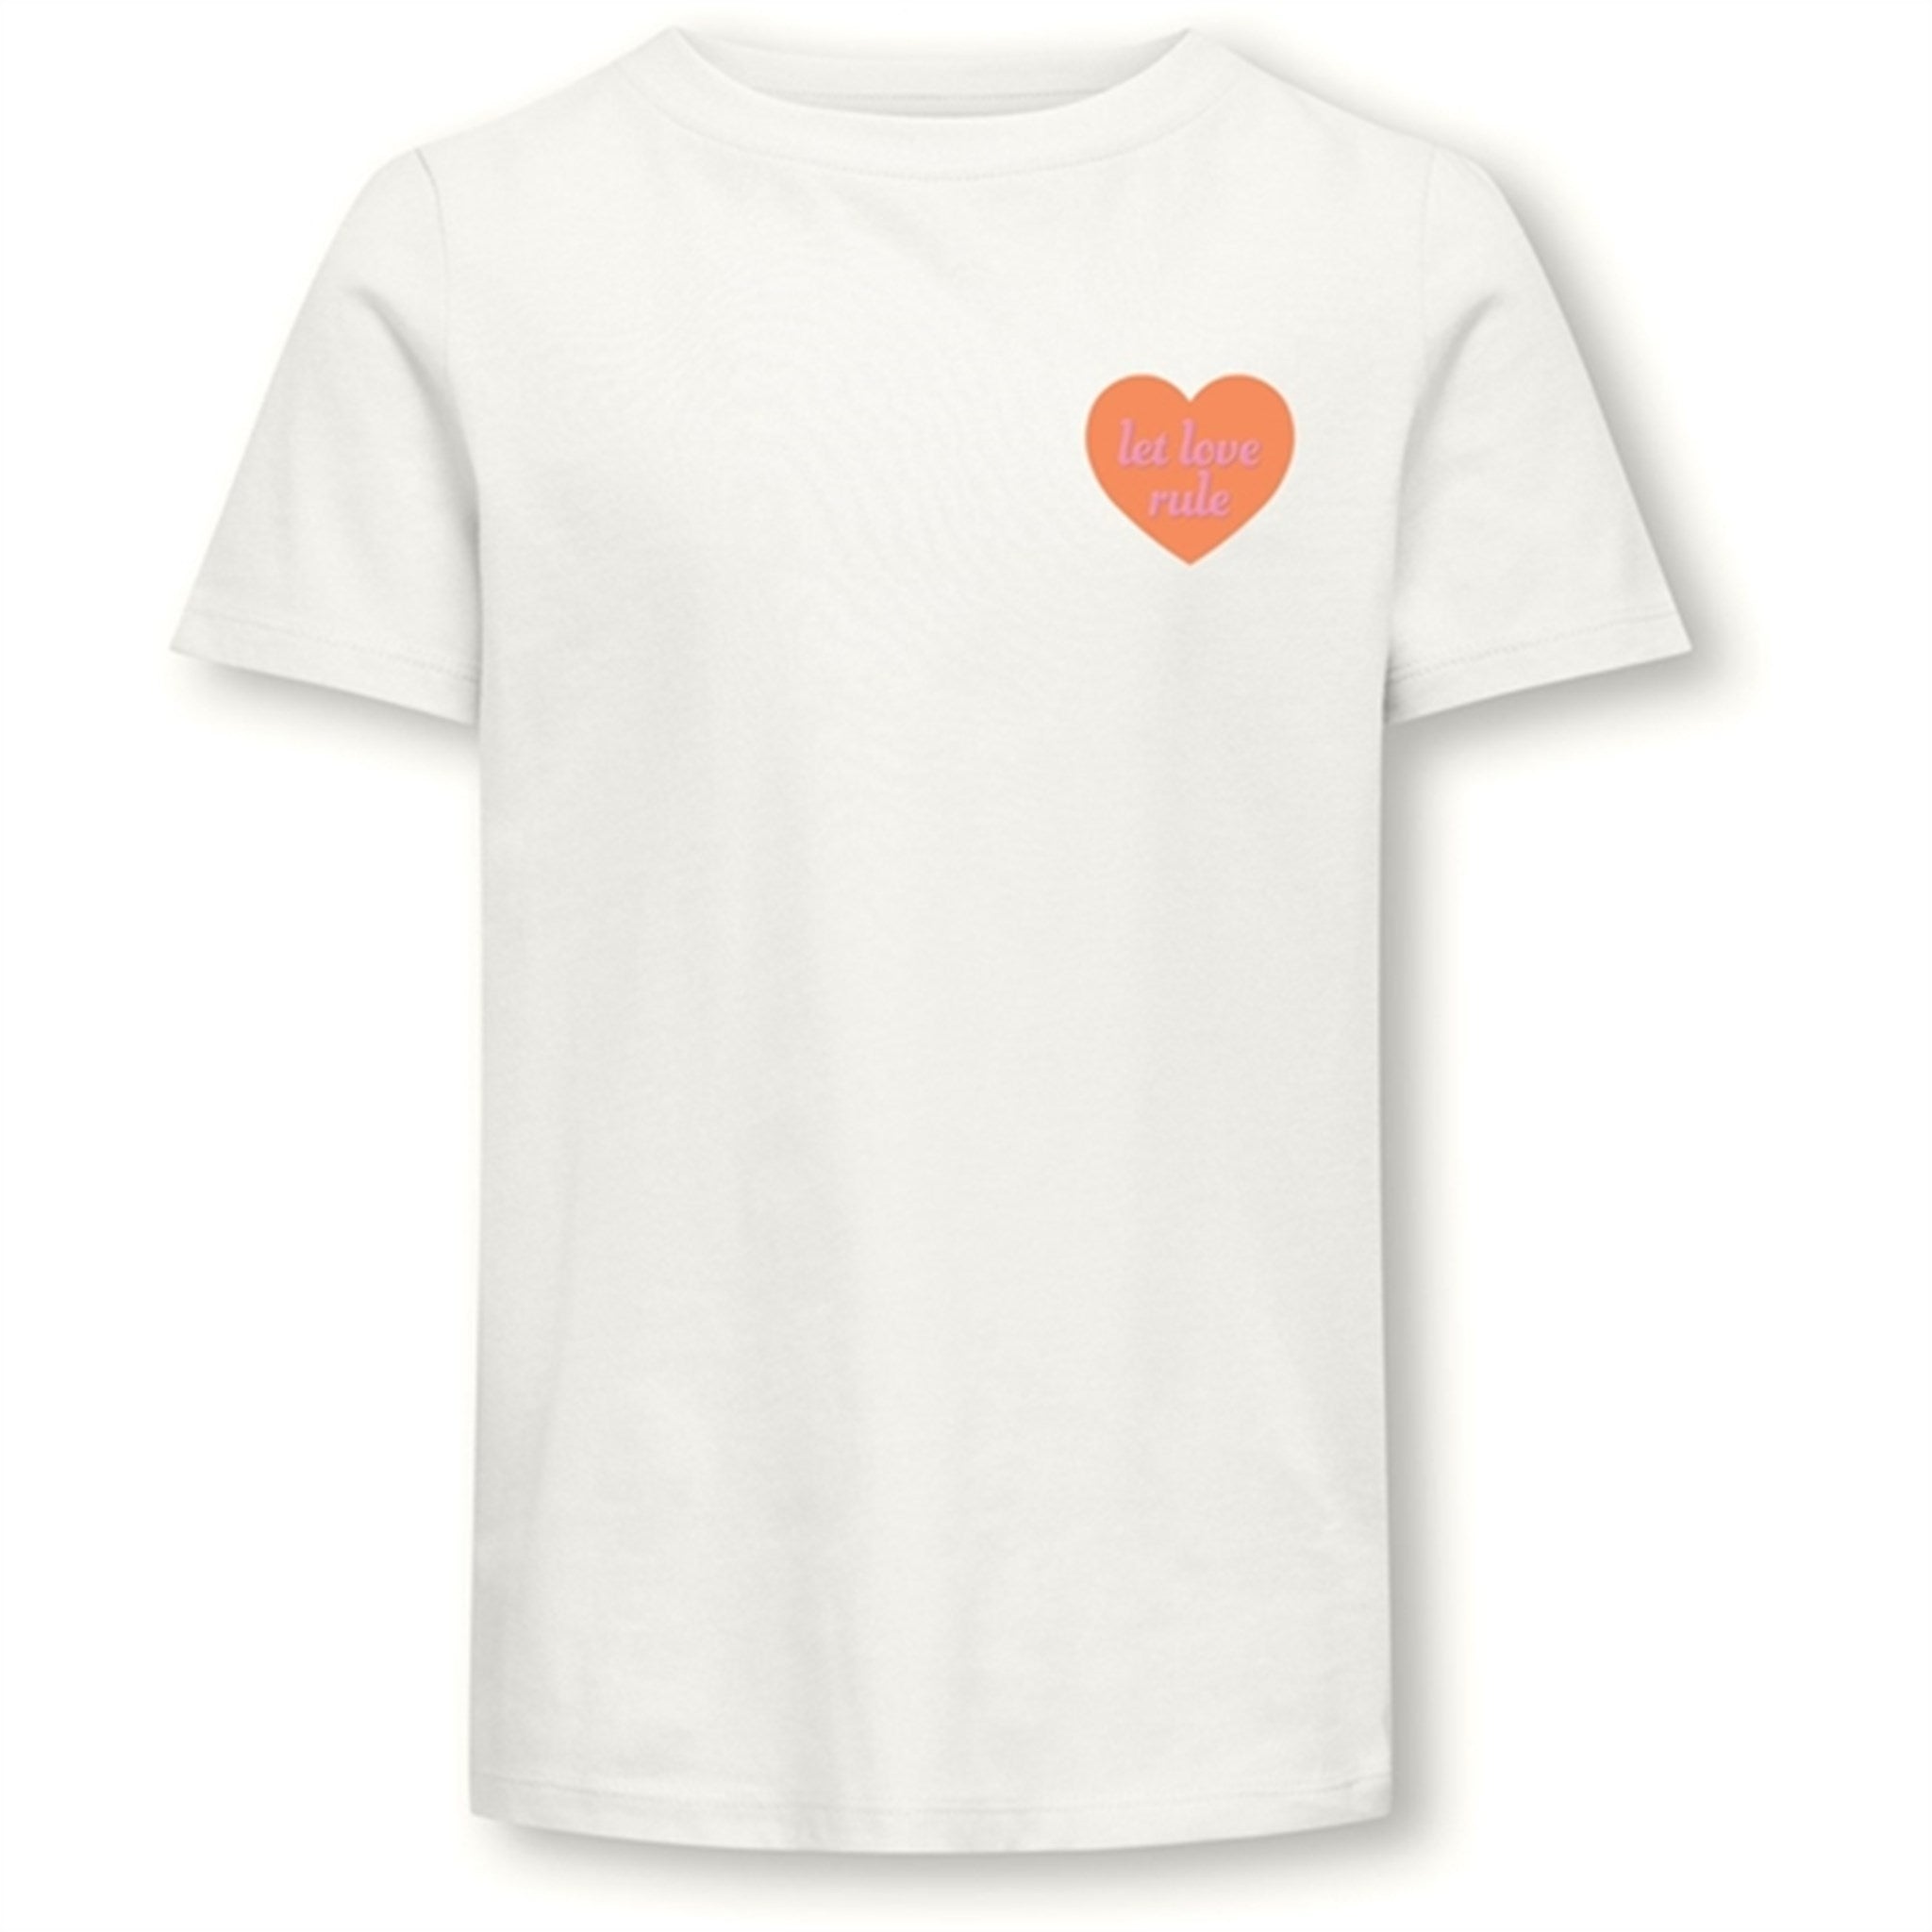 Kids ONLY Cloud Dancer Love Senna Heart T-Shirt